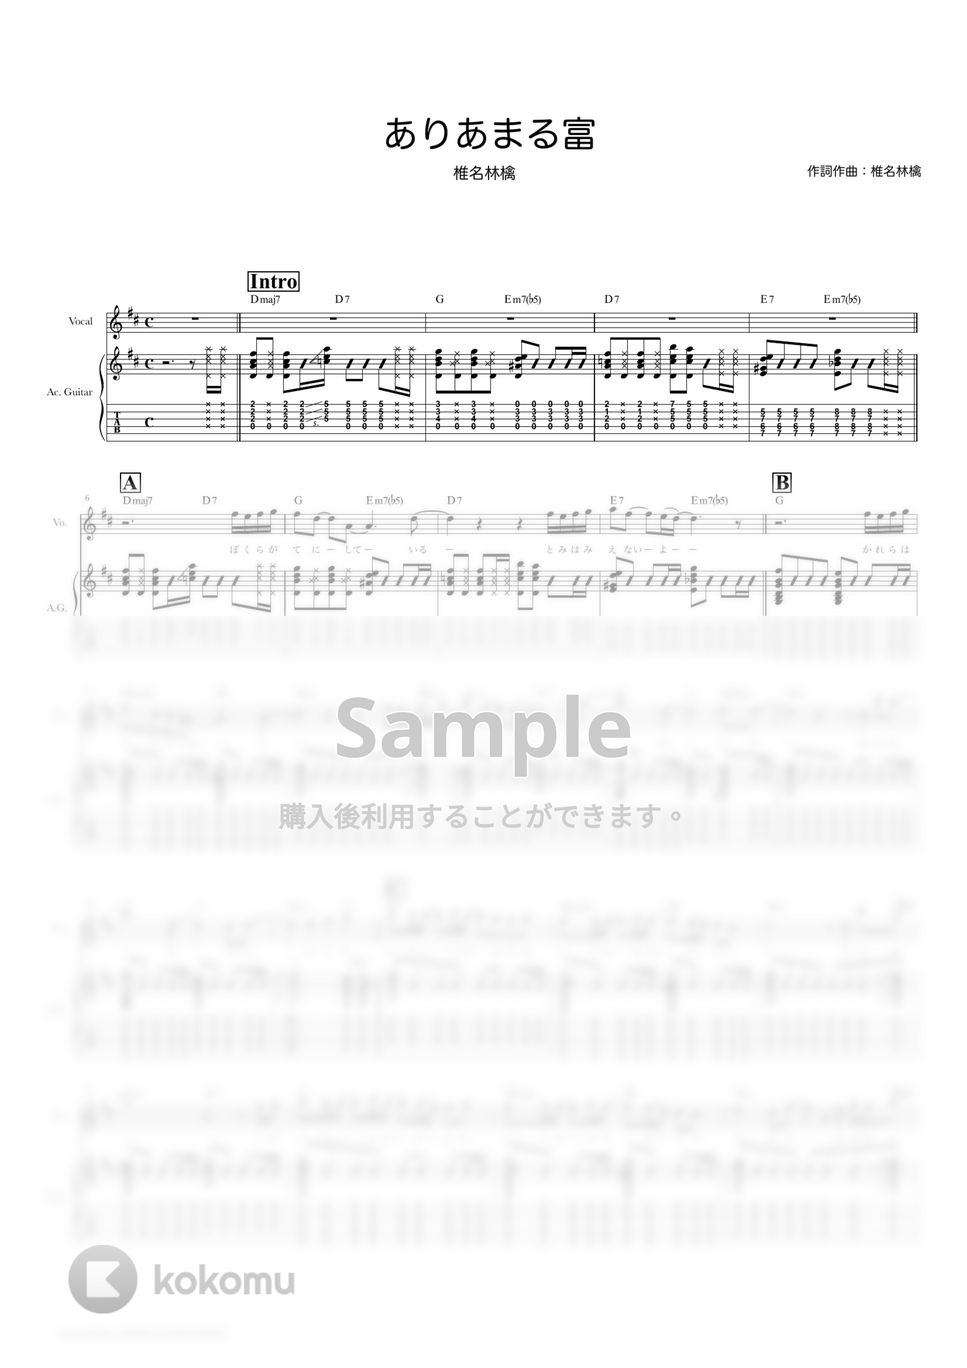 椎名林檎 - ありあまる富 (ギタースコア・歌詞・コード付き) by TRIAD GUITAR SCHOOL